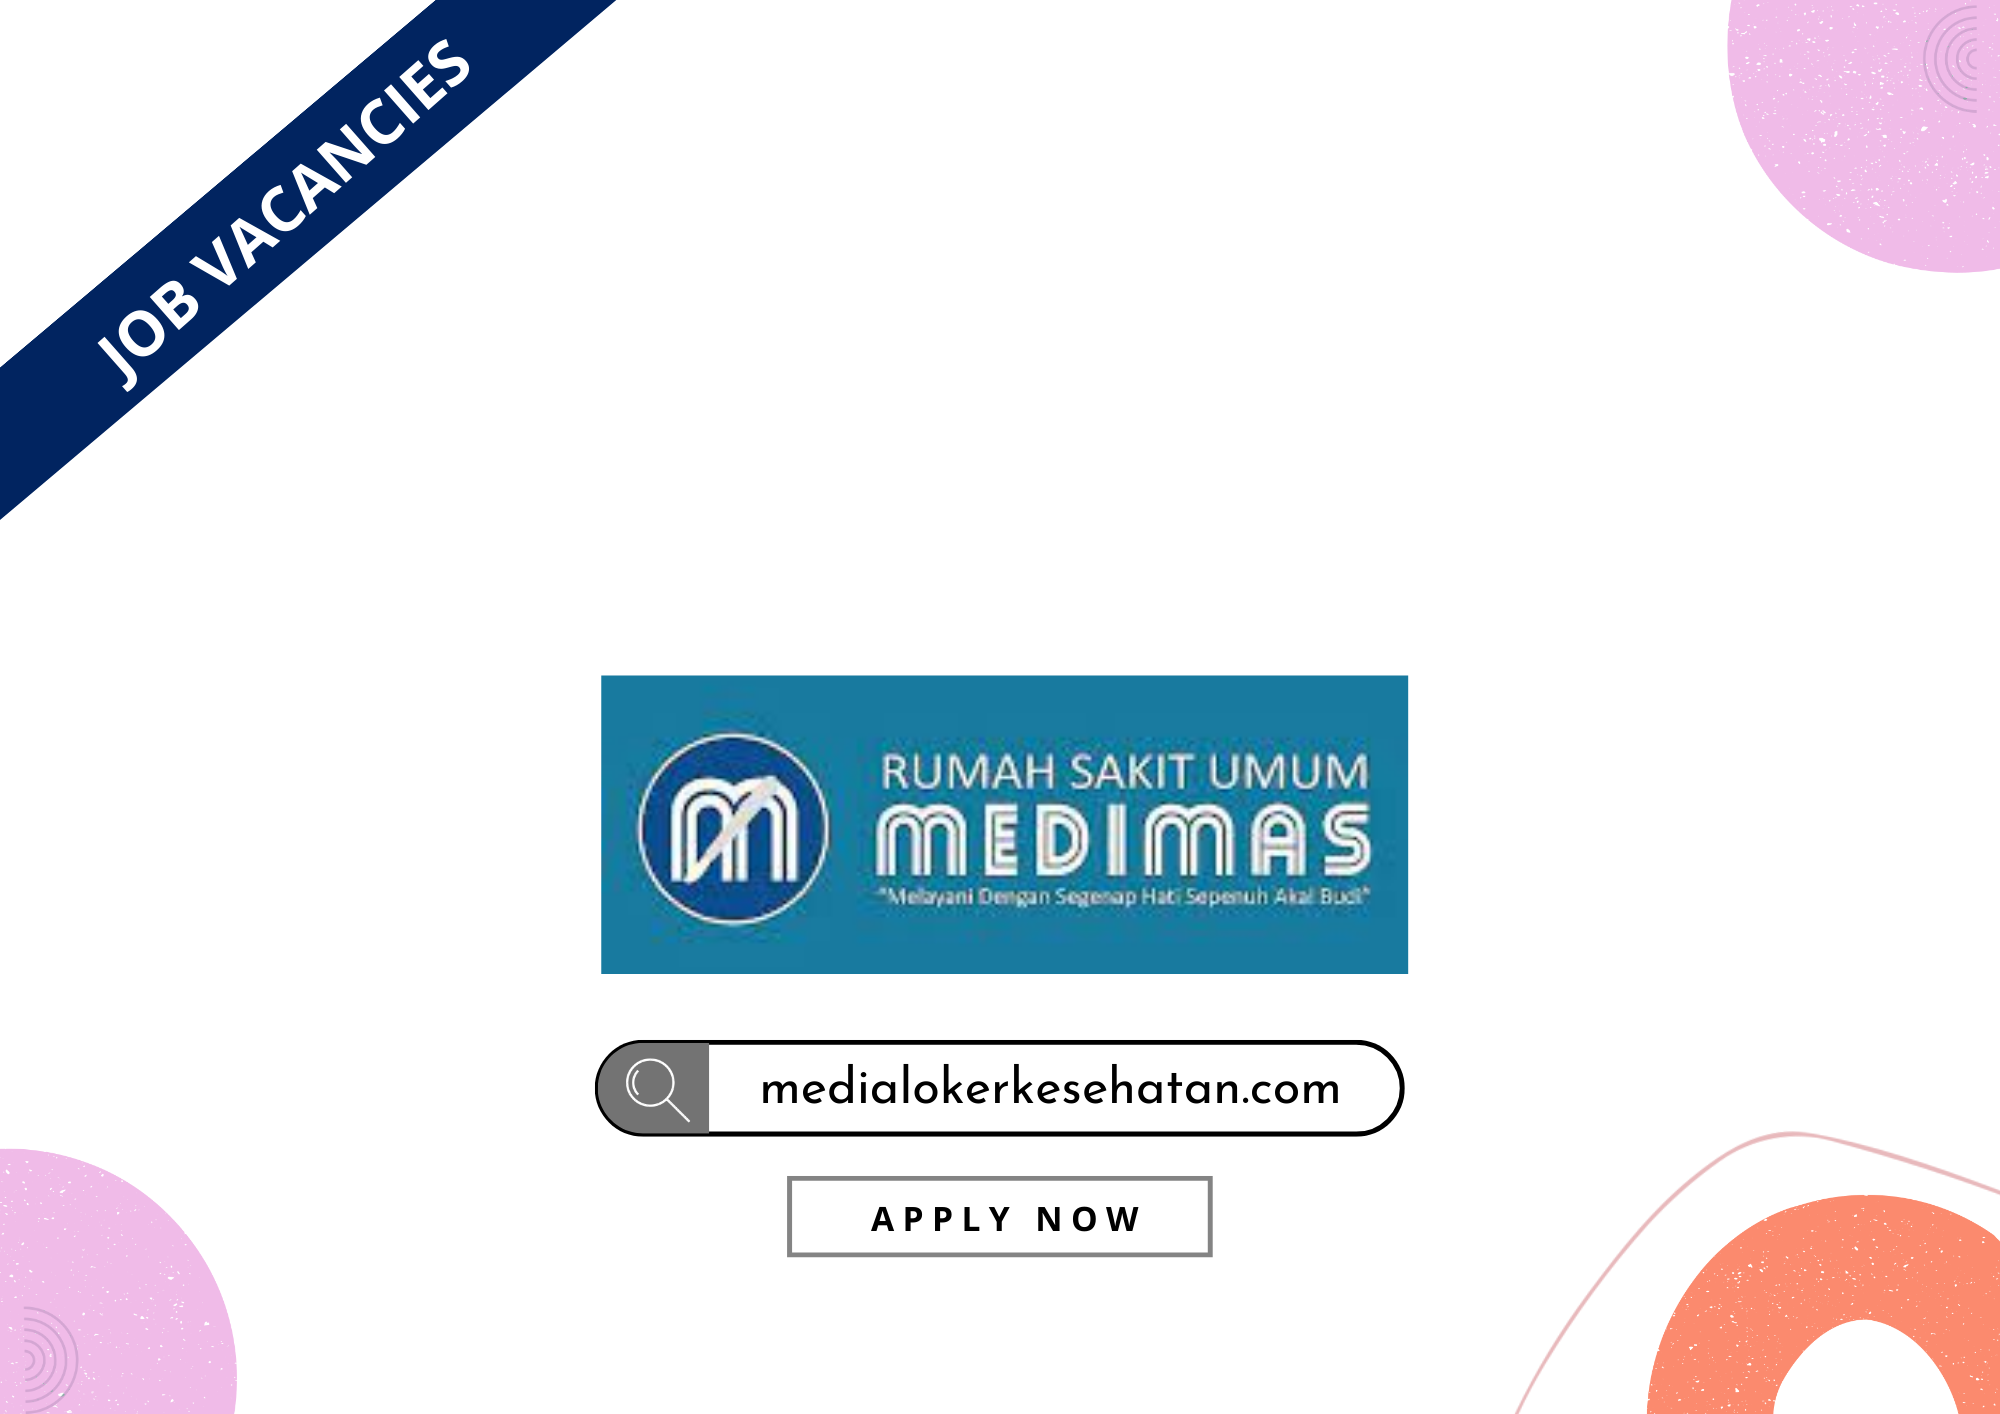 Lowongan Kerja Rumah Sakit Umum Medimas Cirebon, Jawa Barat post thumbnail image